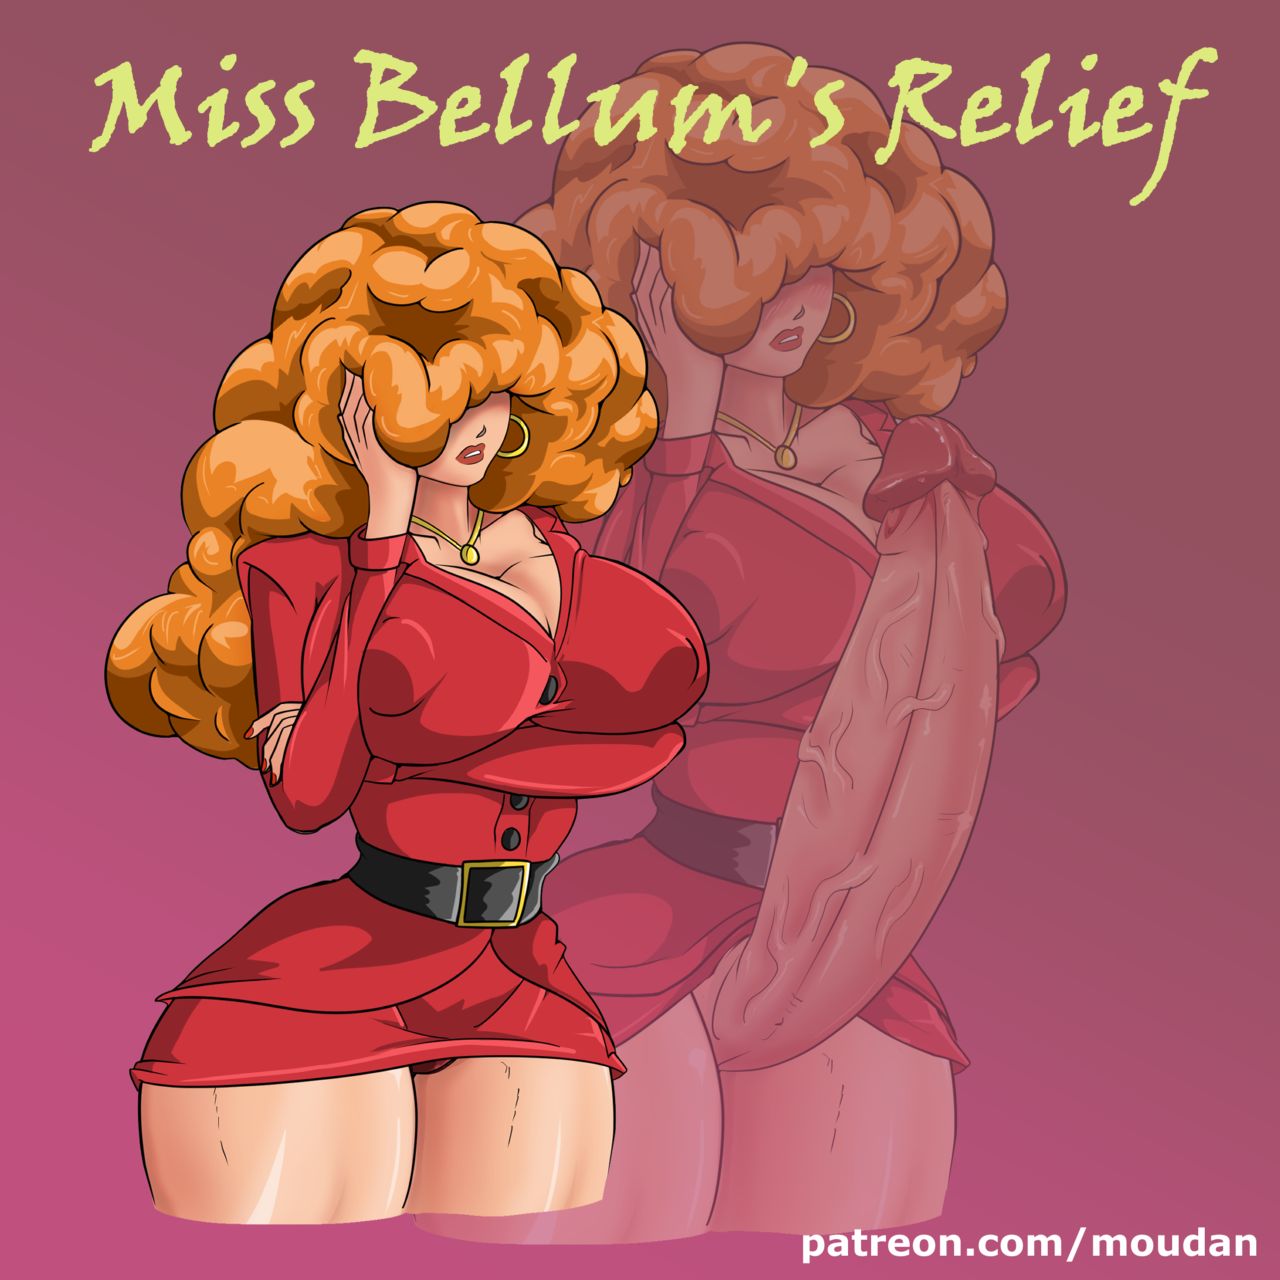 Bellum porn miss Miss Bellum